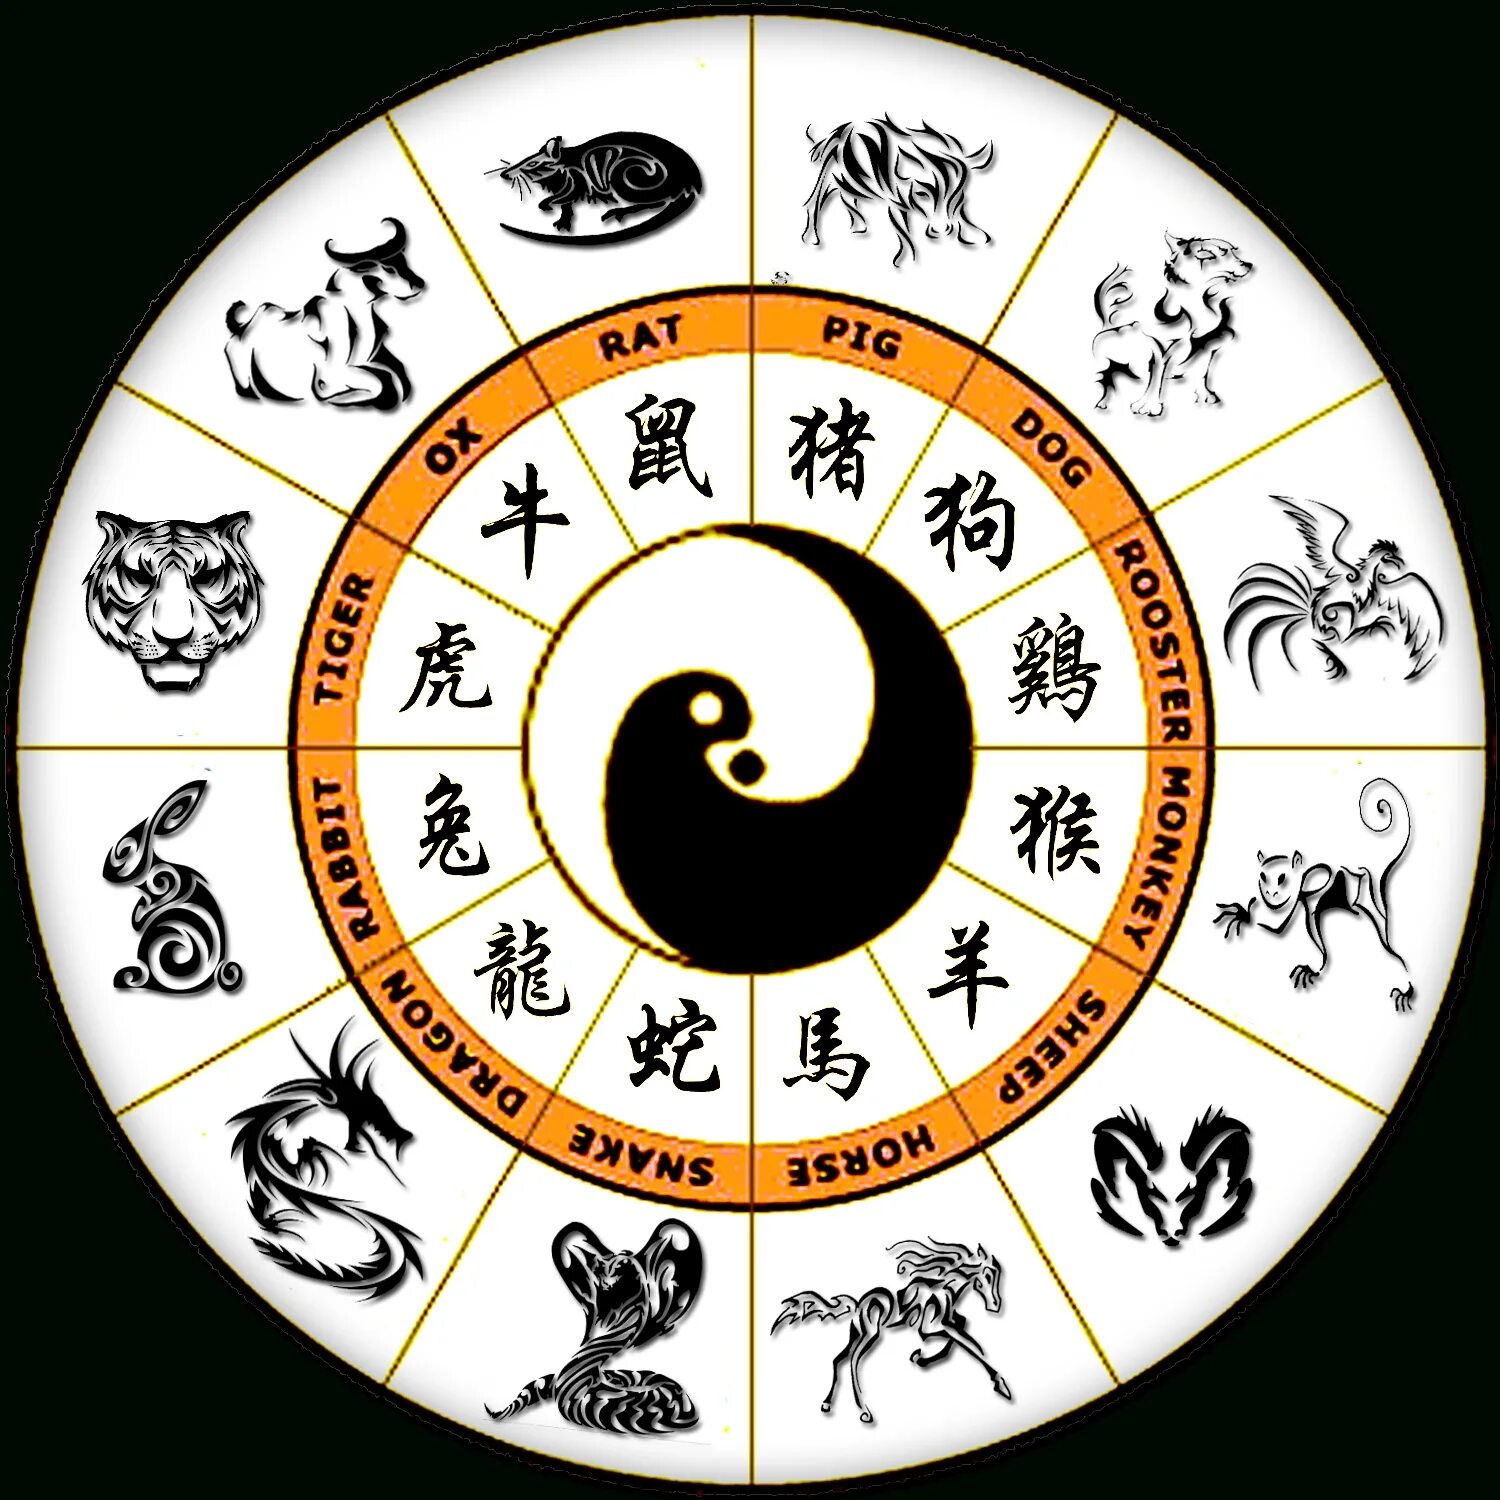 2000 по восточному календарю. Зодиакальный круг знаков зодиака по годам. Китайский Зодиакальный круг. Китайский Зодиакальный круг по годам. Китайские знаки зодиака по годам.